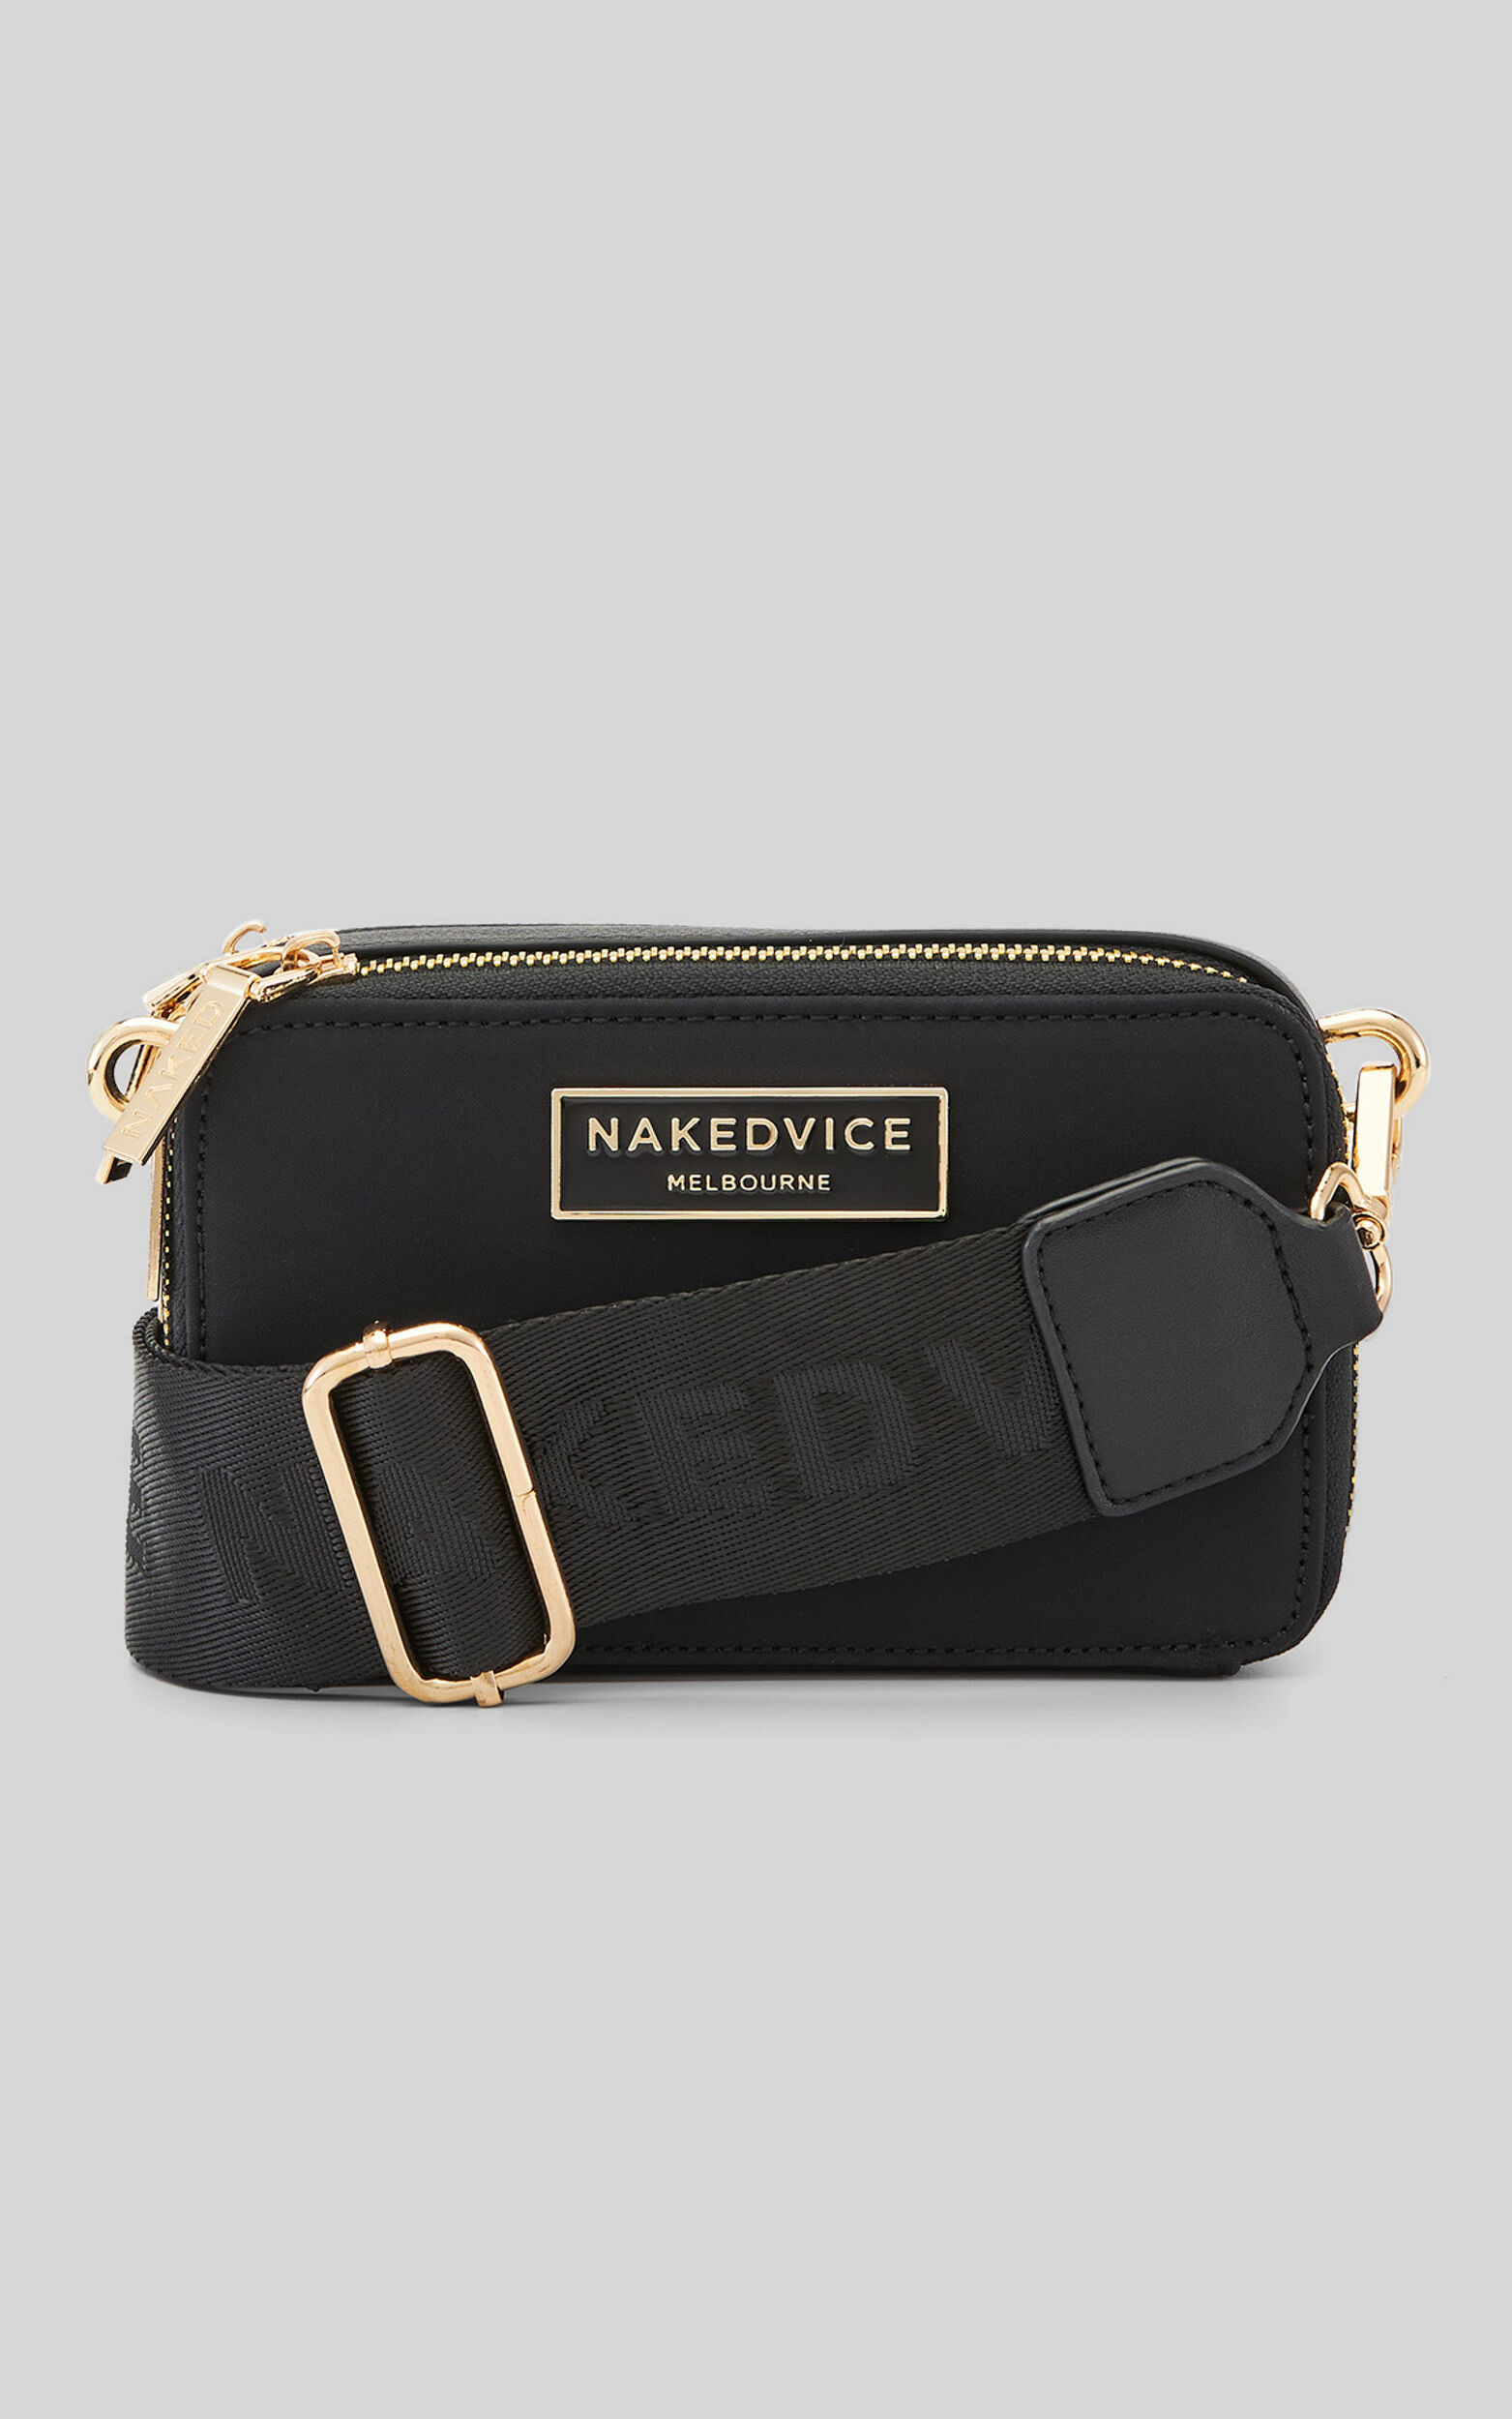 Nakedvice - The Lexie Nylon Bag in Black / Gold - NoSize, BLK1